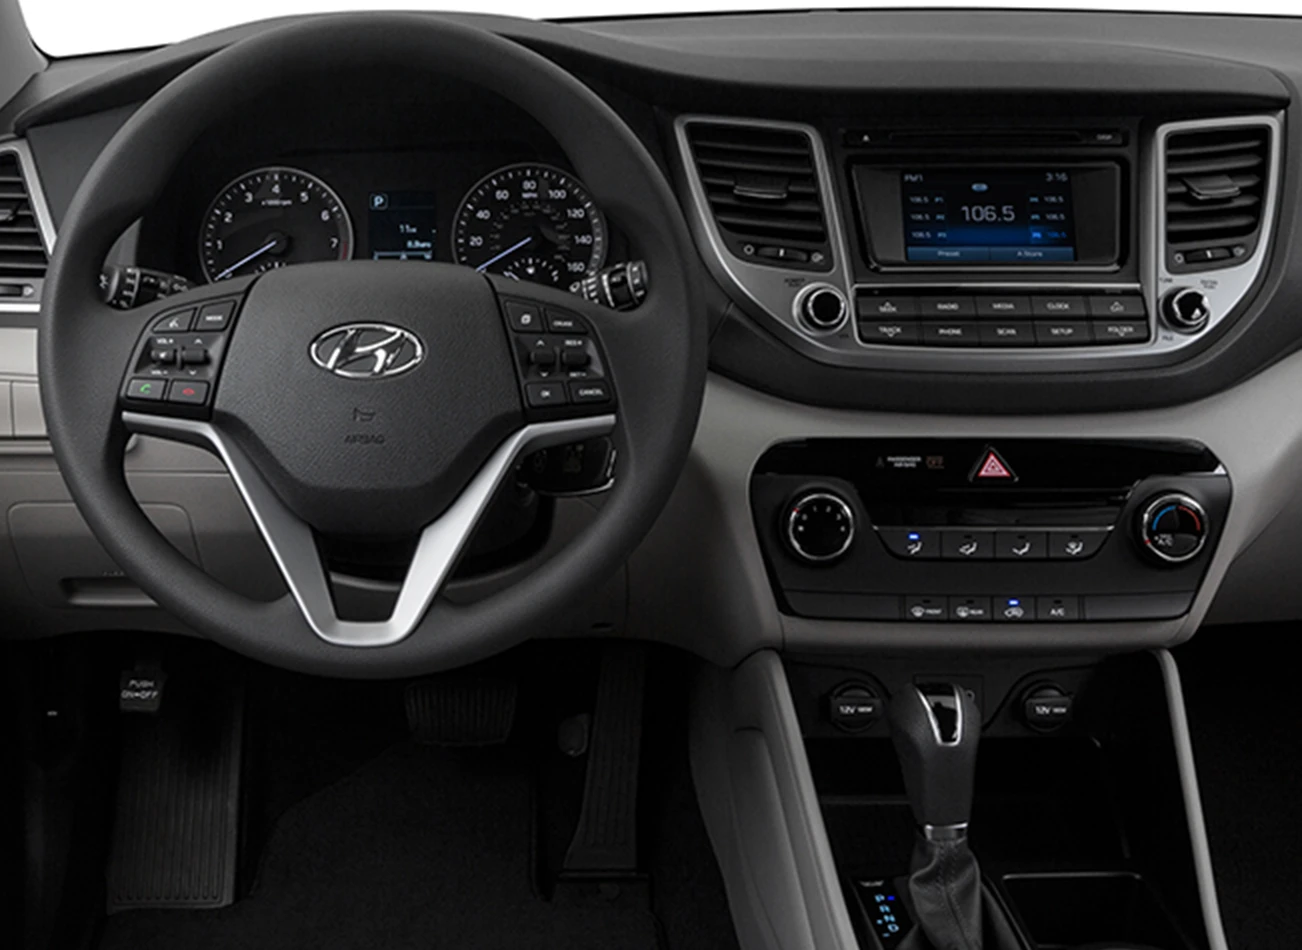 2017 Hyundai Tucson Review: Dashboard | CarMax